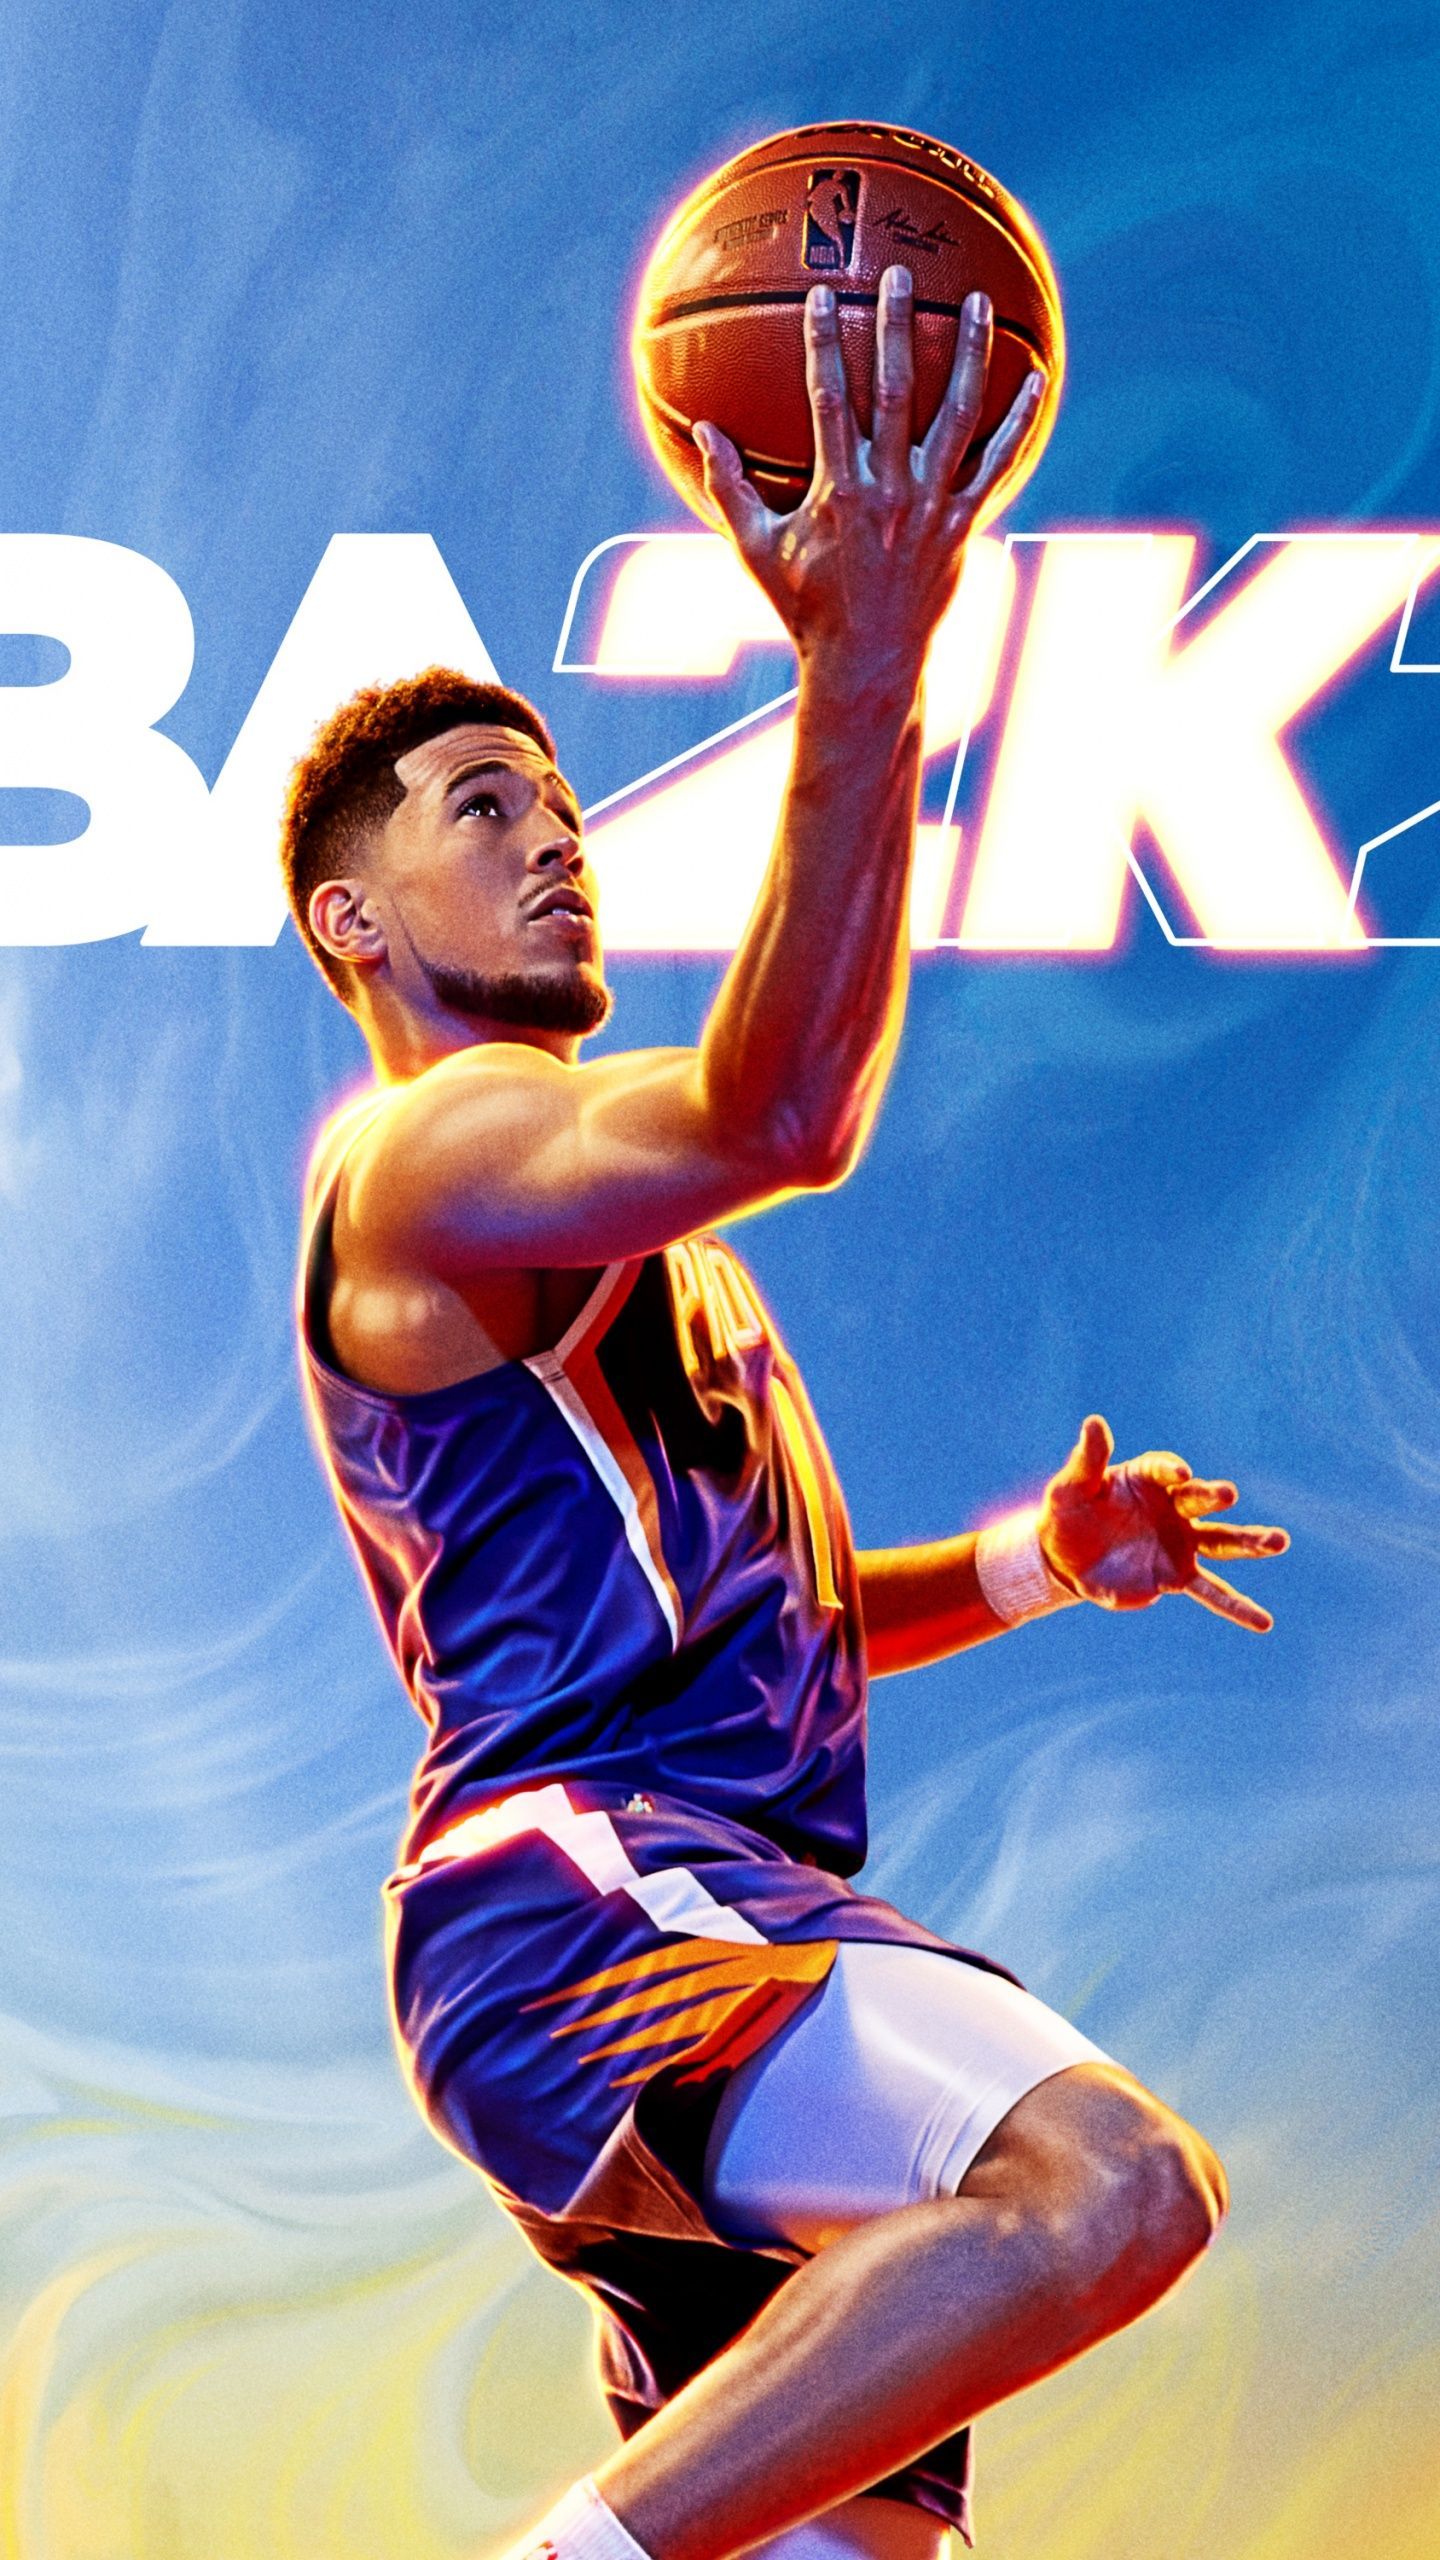 Devin Booker Wallpaper 4K, NBA 2K Basketball game